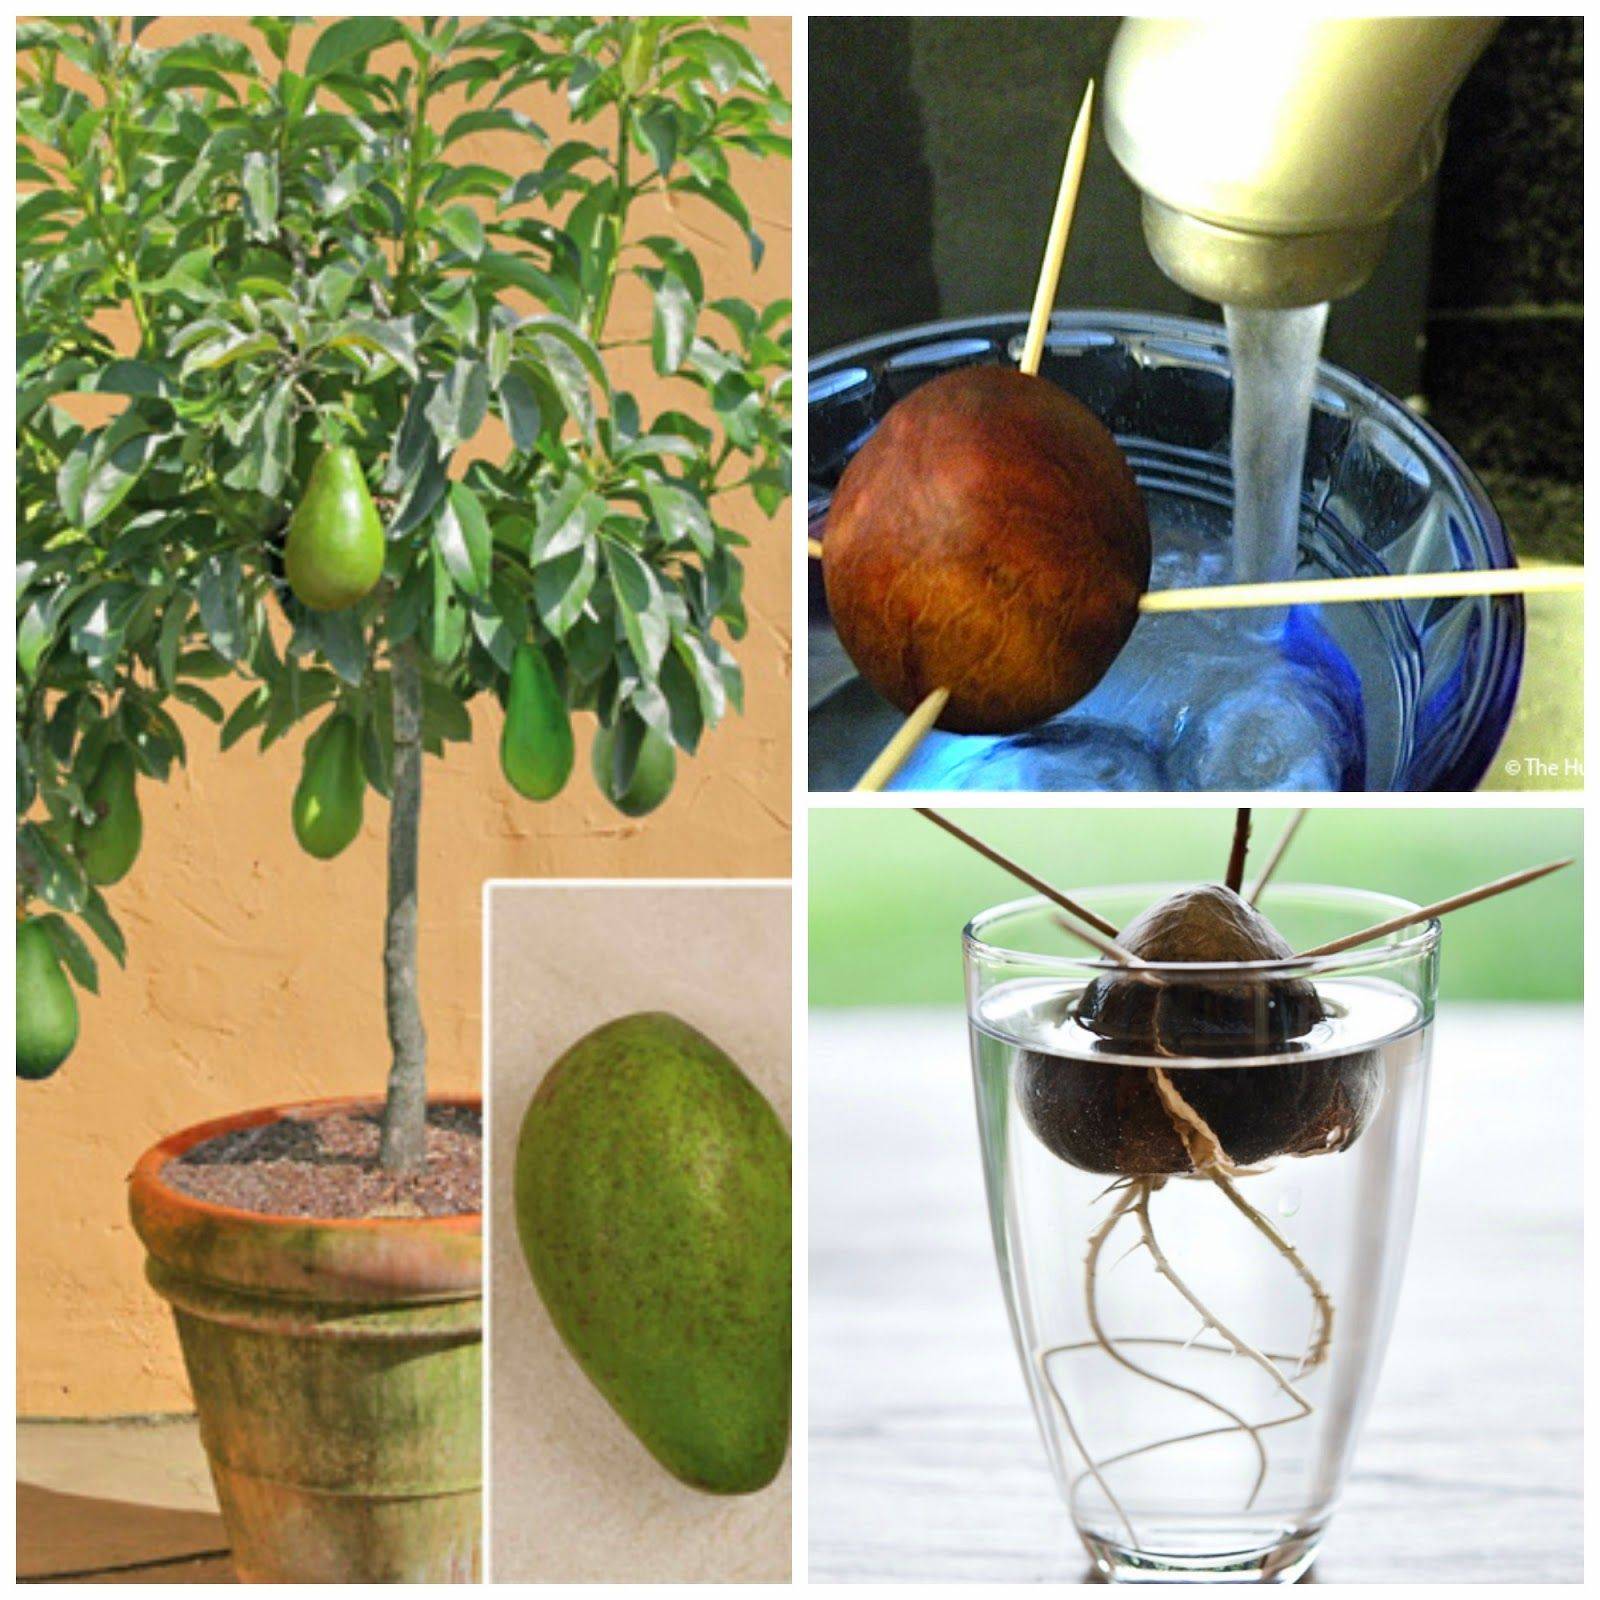 Как посадить авокадо из косточки в домашних условиях с фото